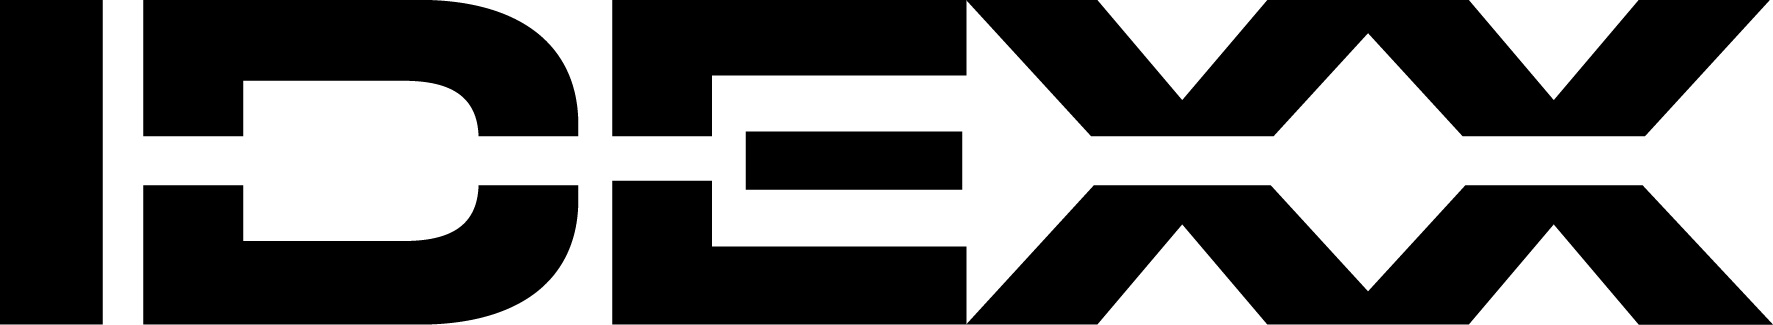 IDEXX Logo.jpg